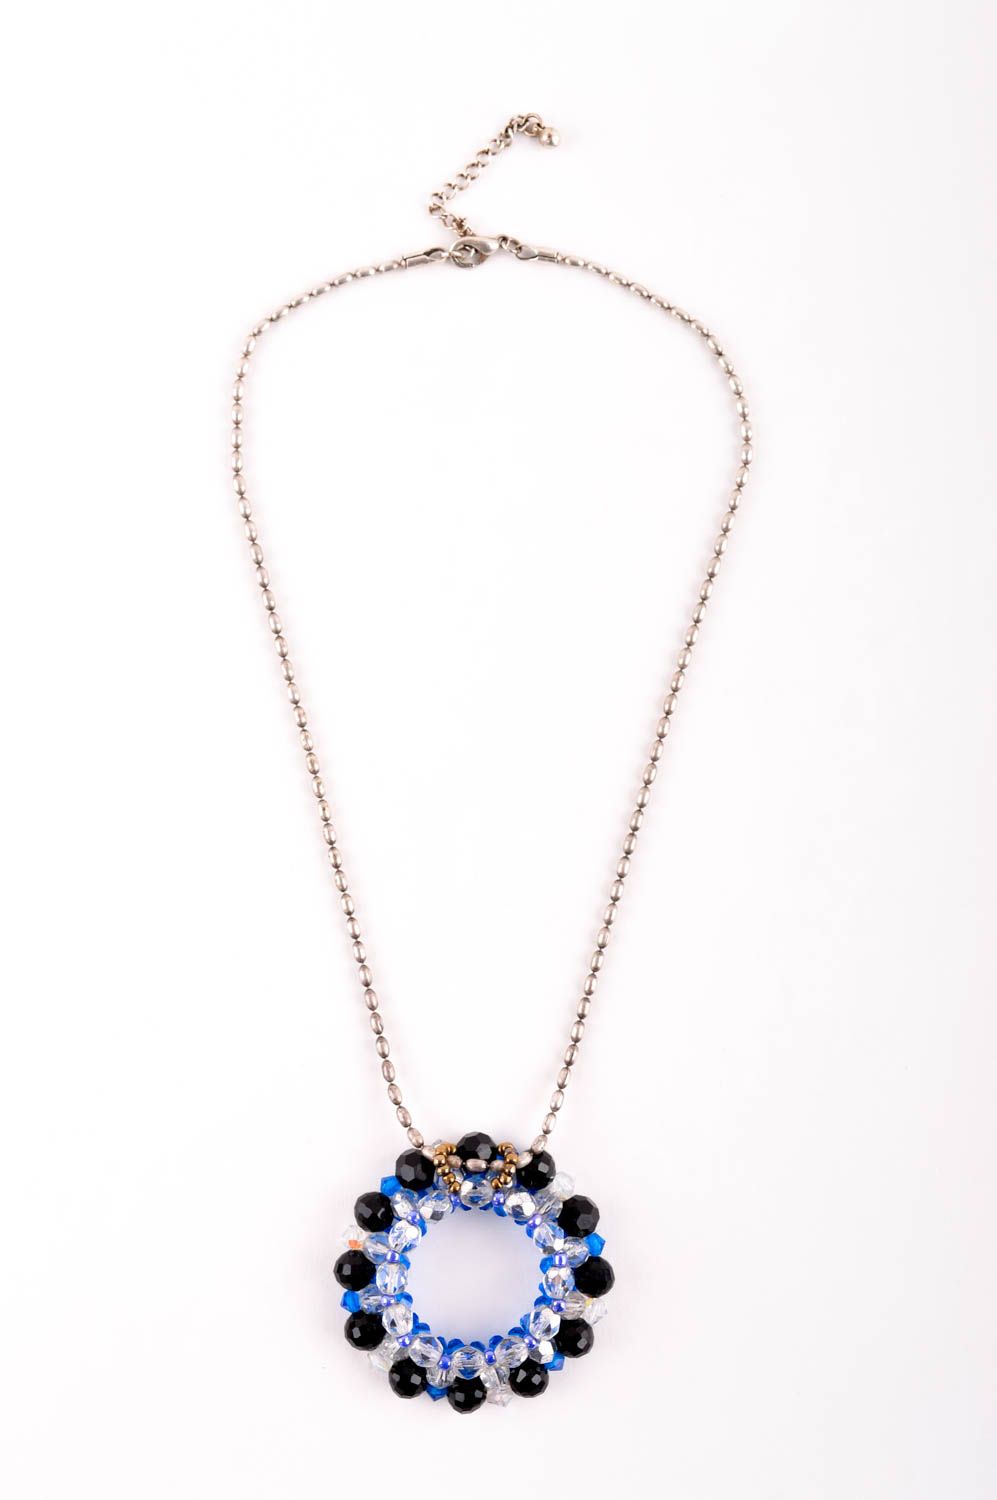 Handmade pendant designer pendant beaded pendant for women unusual gift photo 2